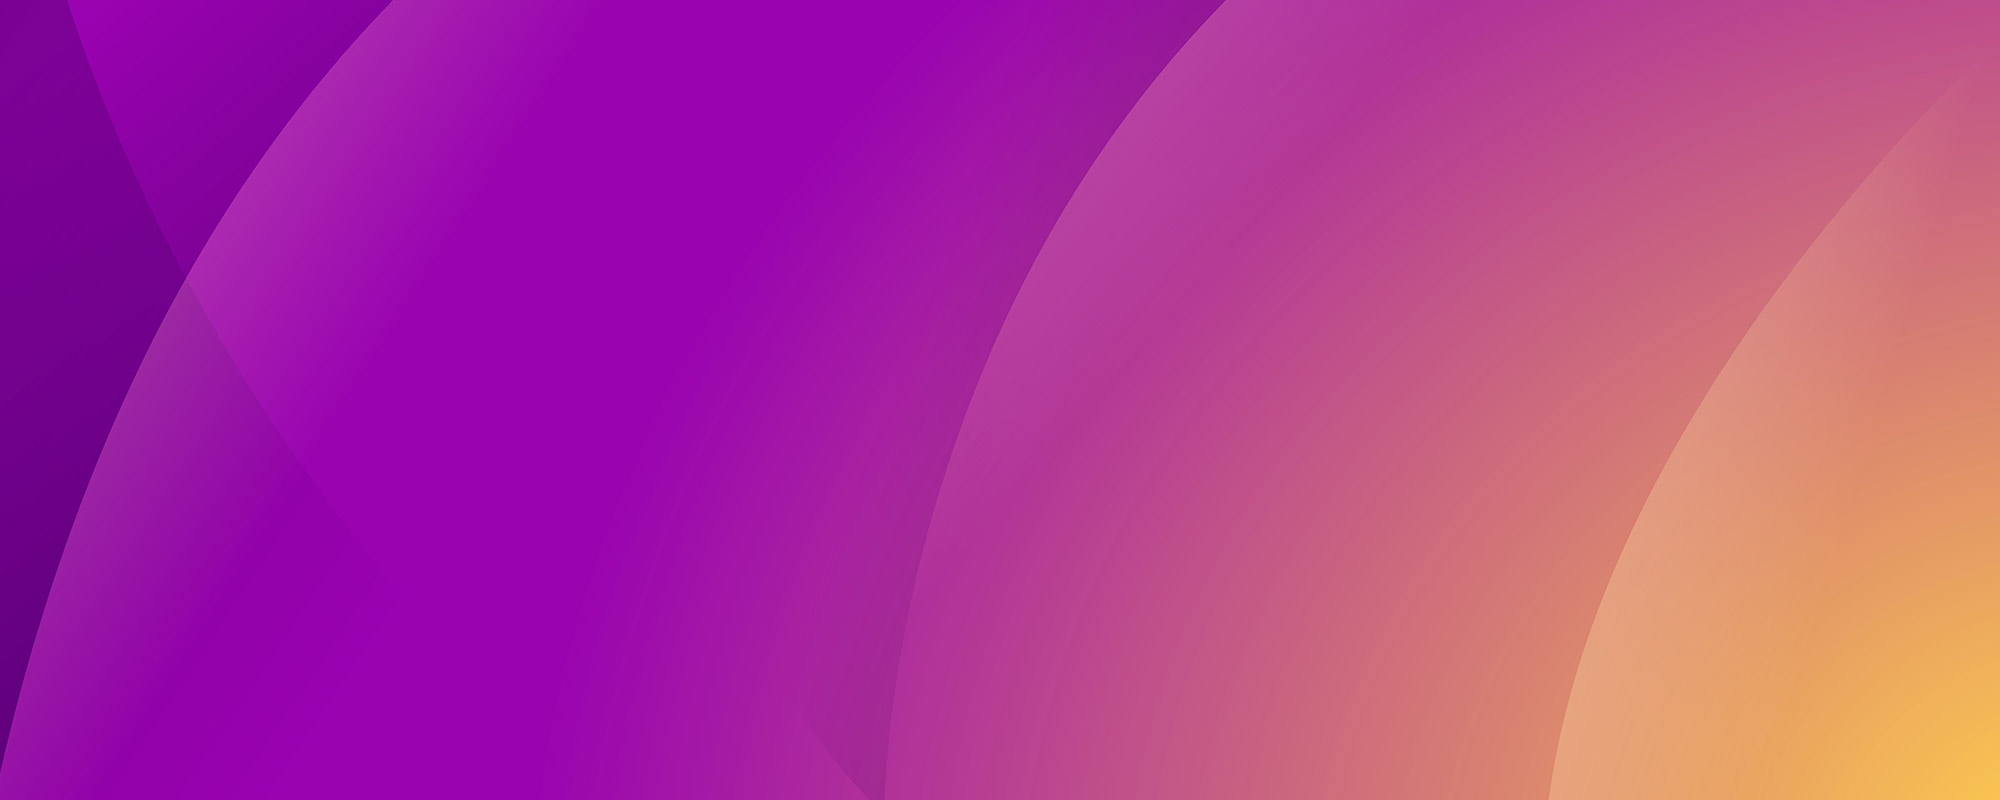 bg purple